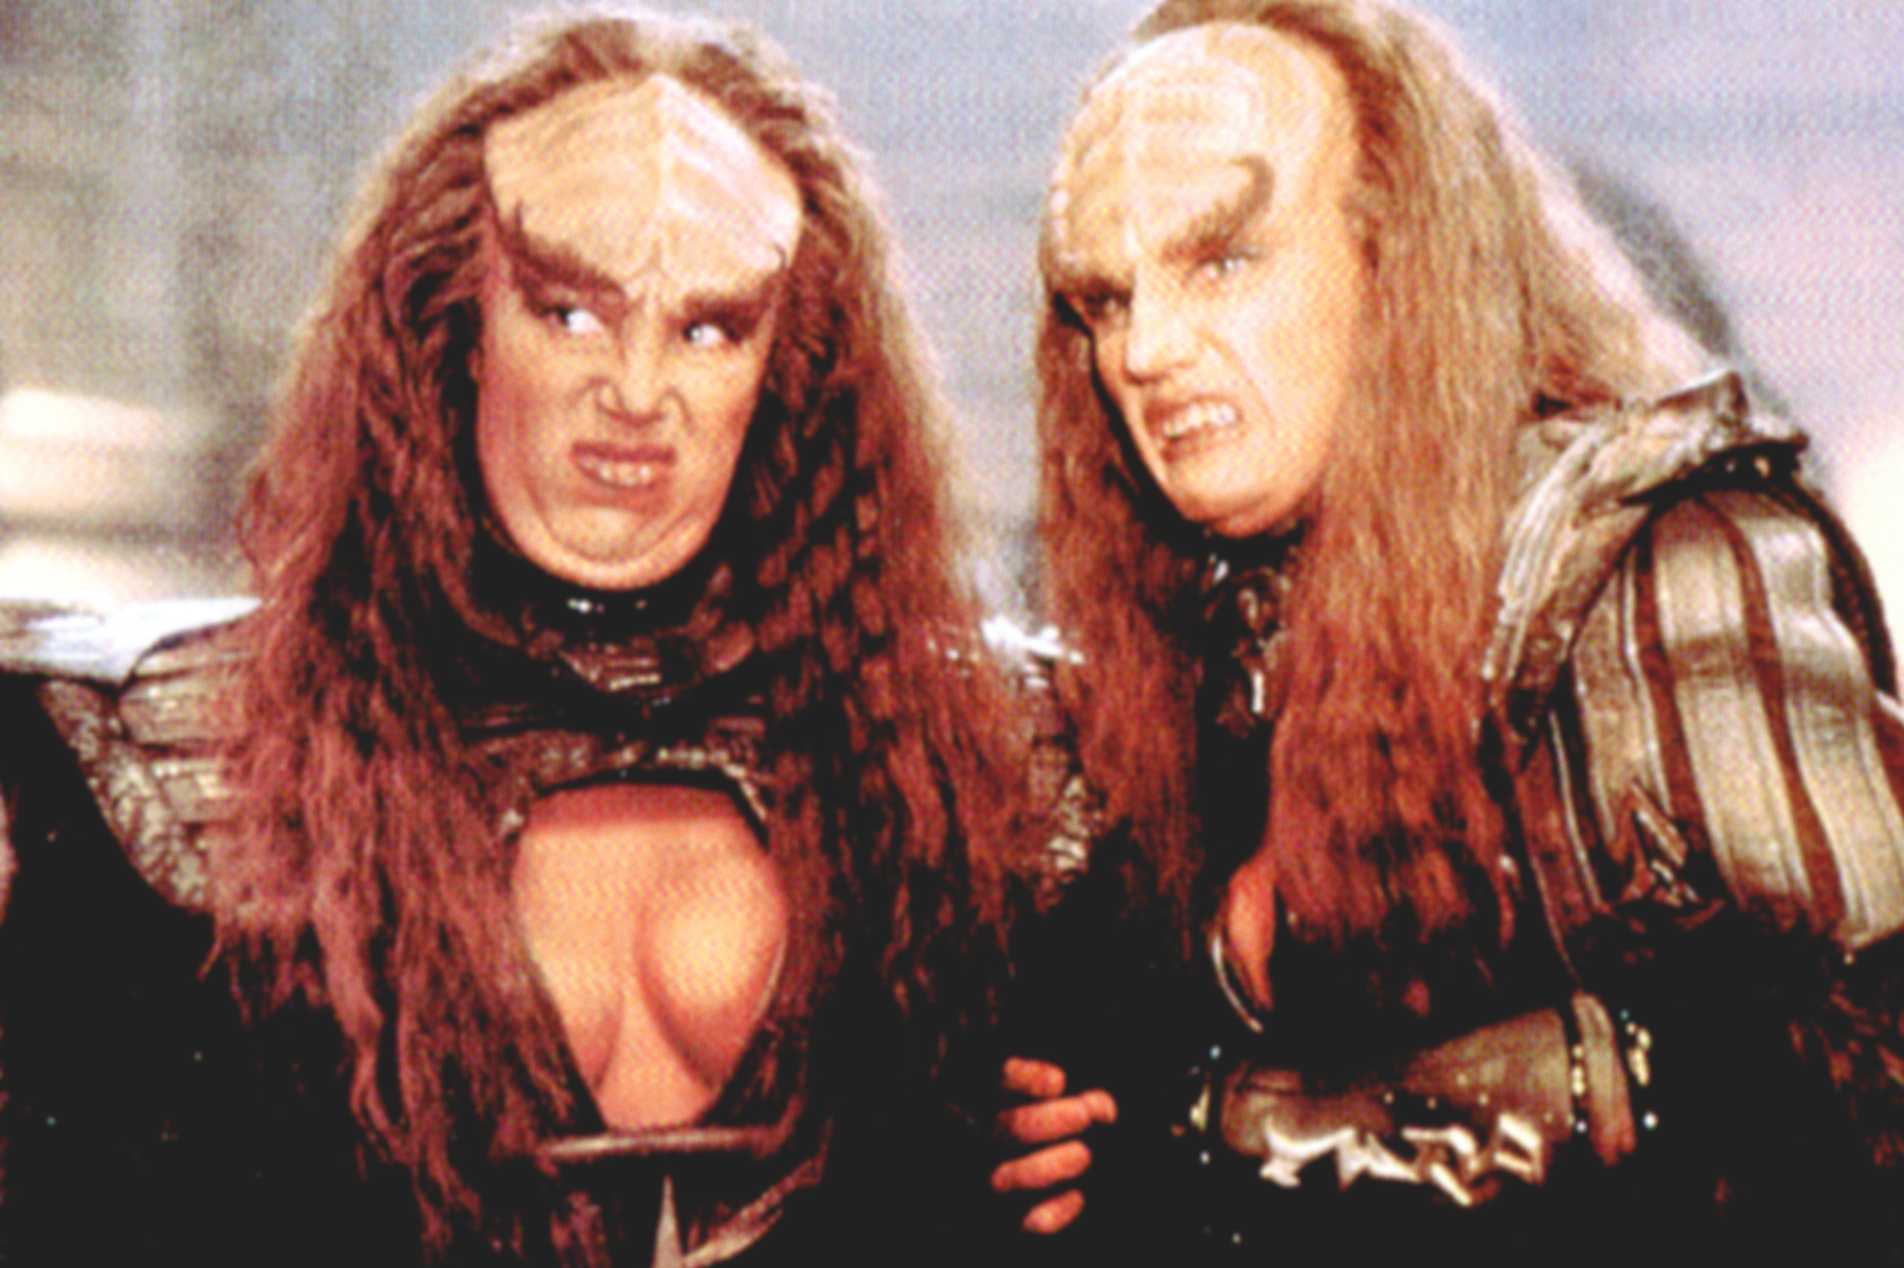 Klingon tits